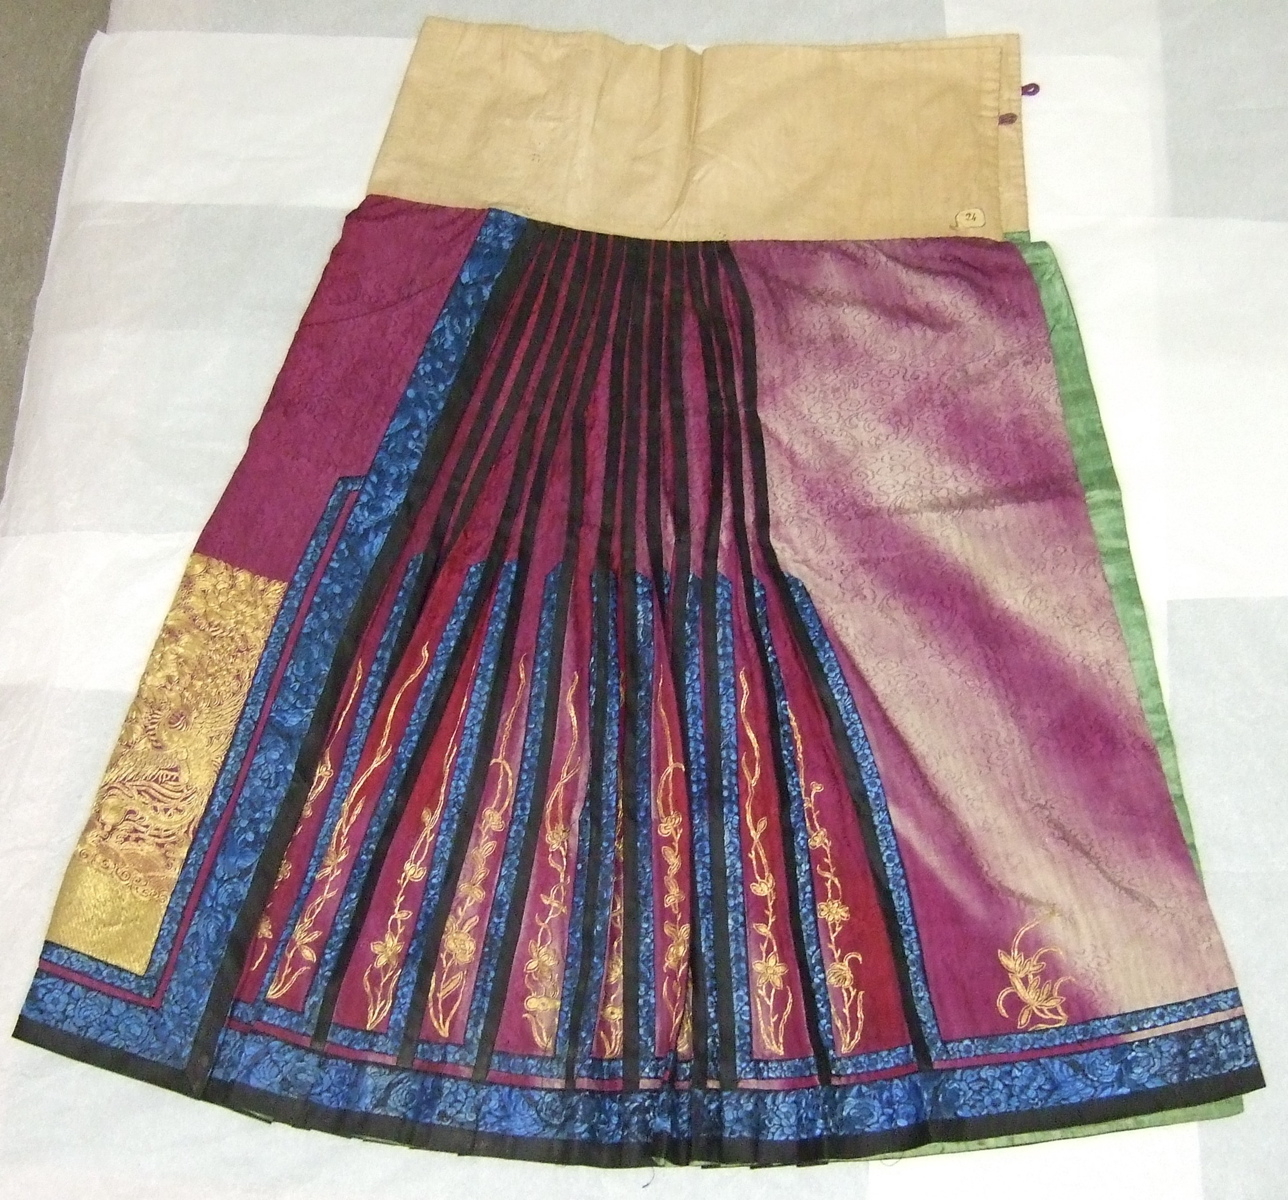 Jupe chinoise destinée à accompagner une robe. Violette, plis bleus et violets, motifs au fil d'or. Doublure verte. (titre factice)